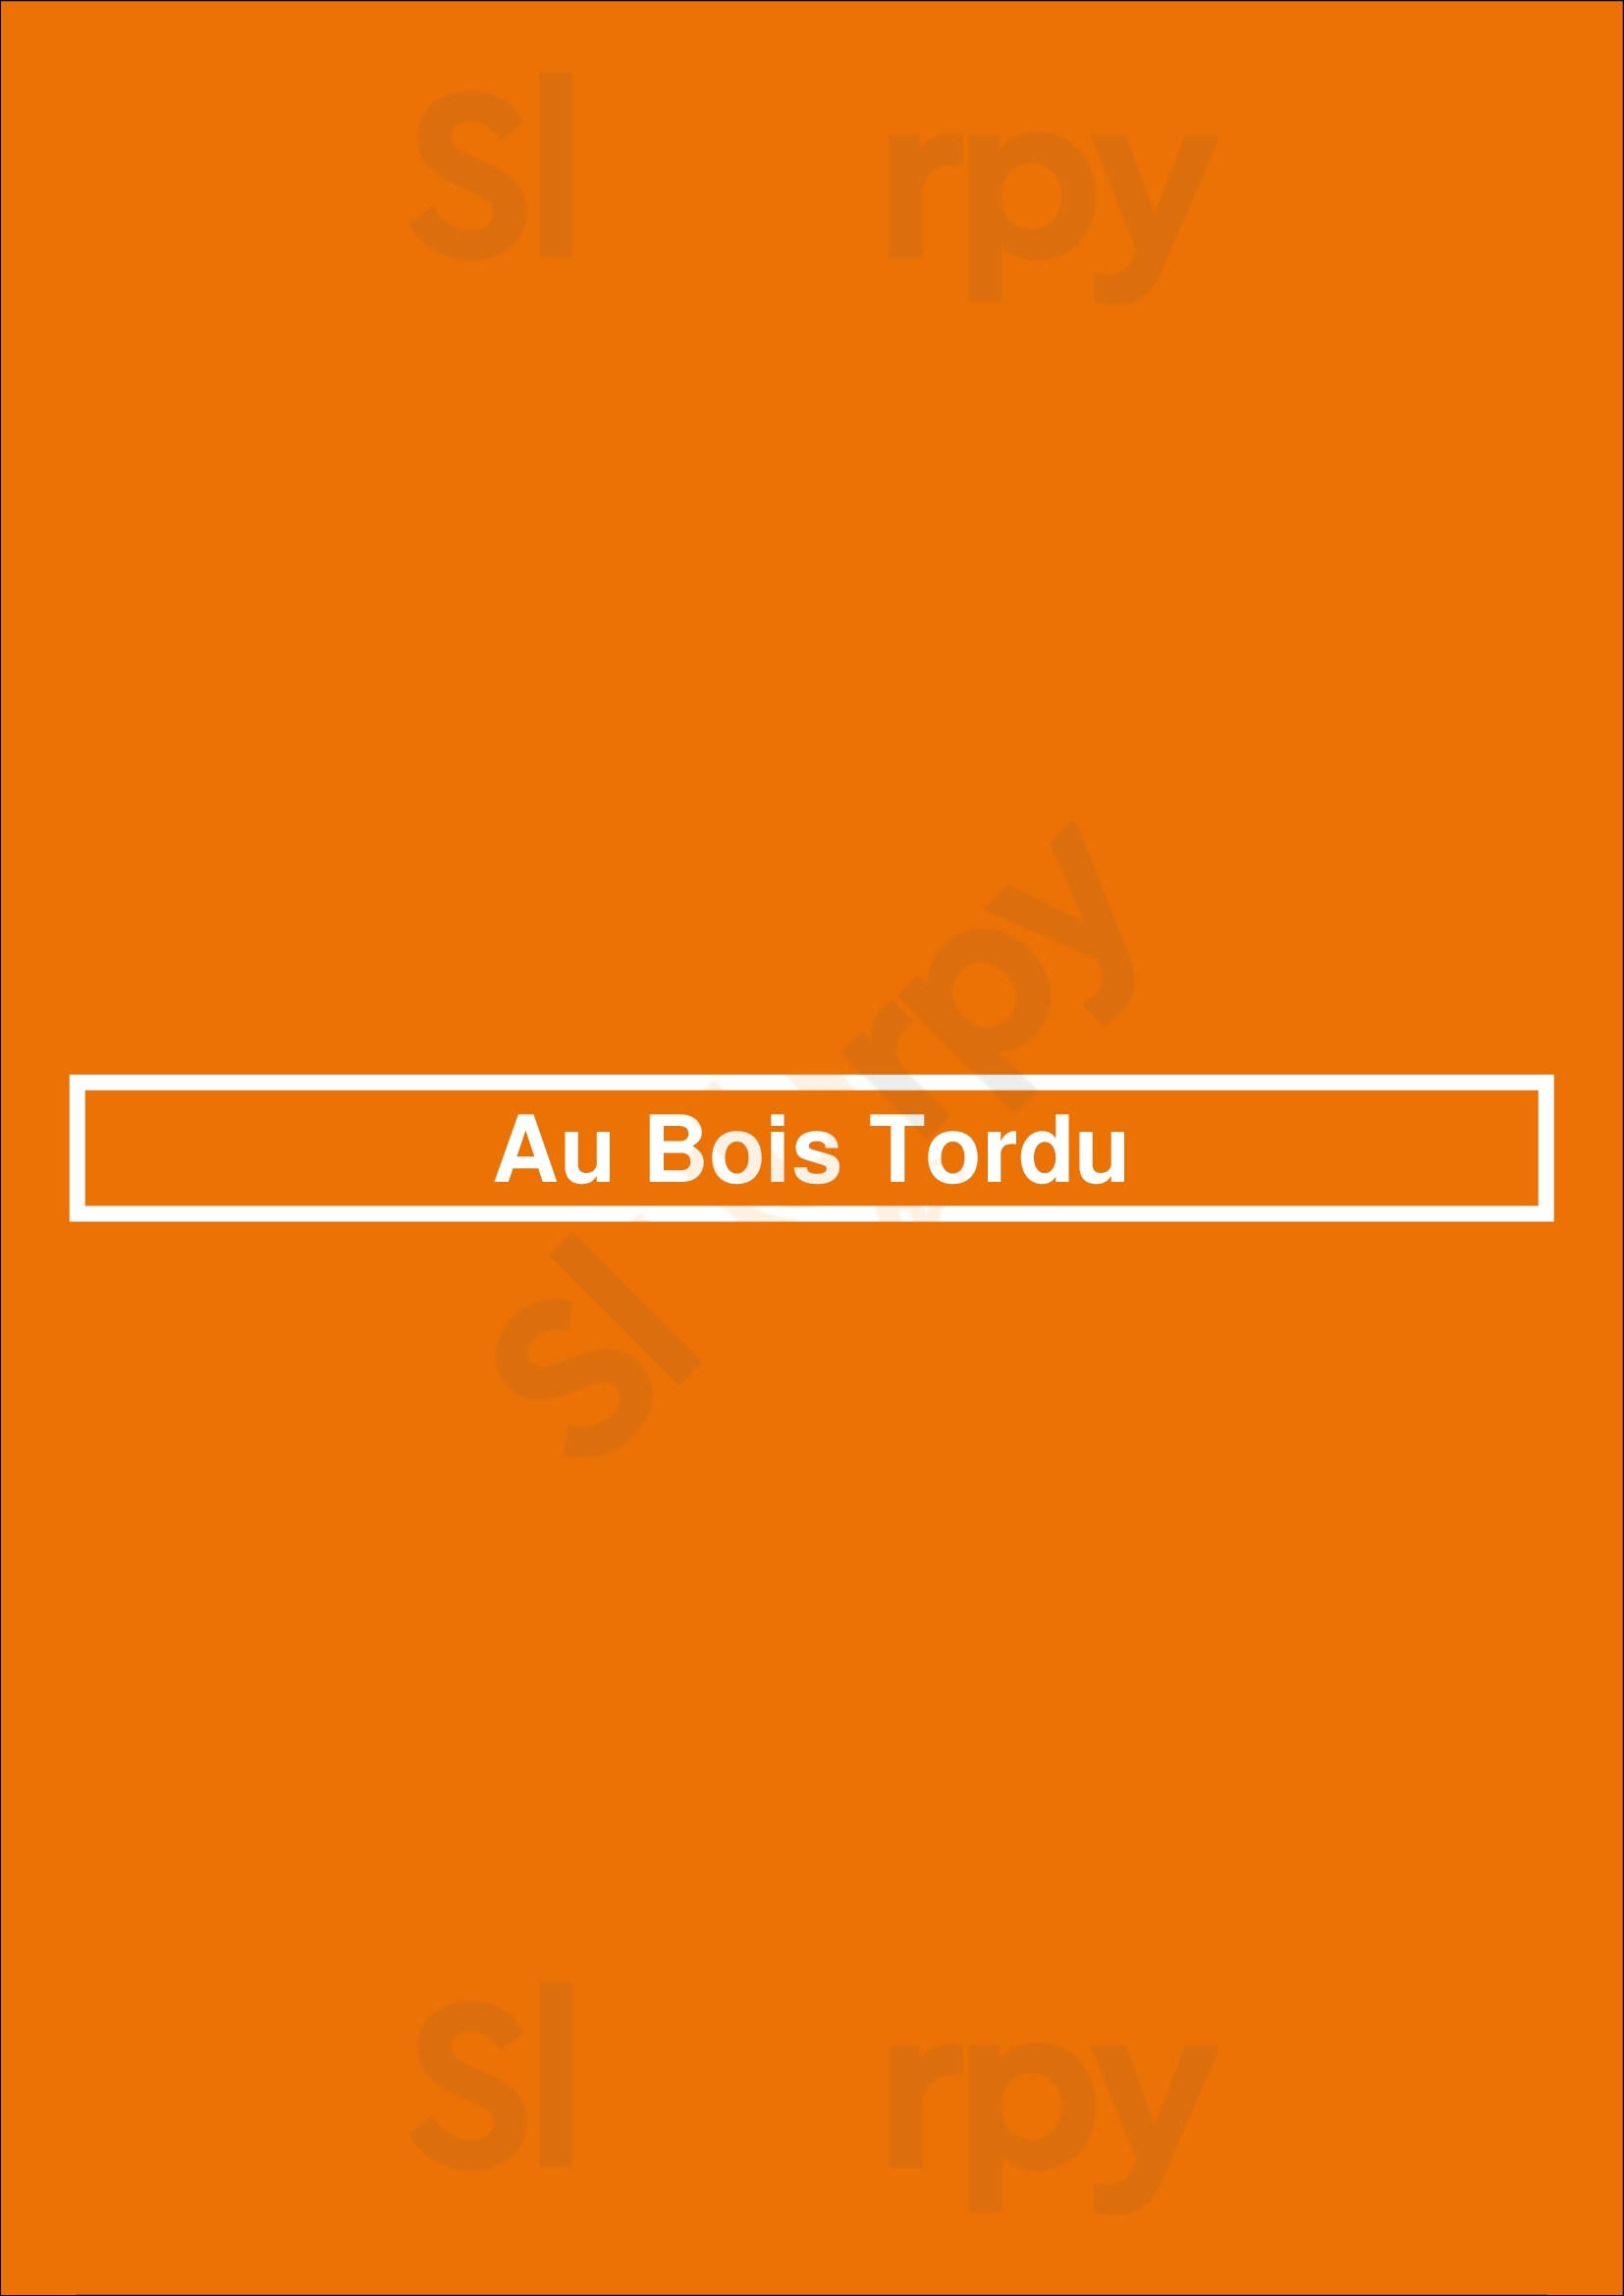 Au Bois Tordu Dijon Menu - 1